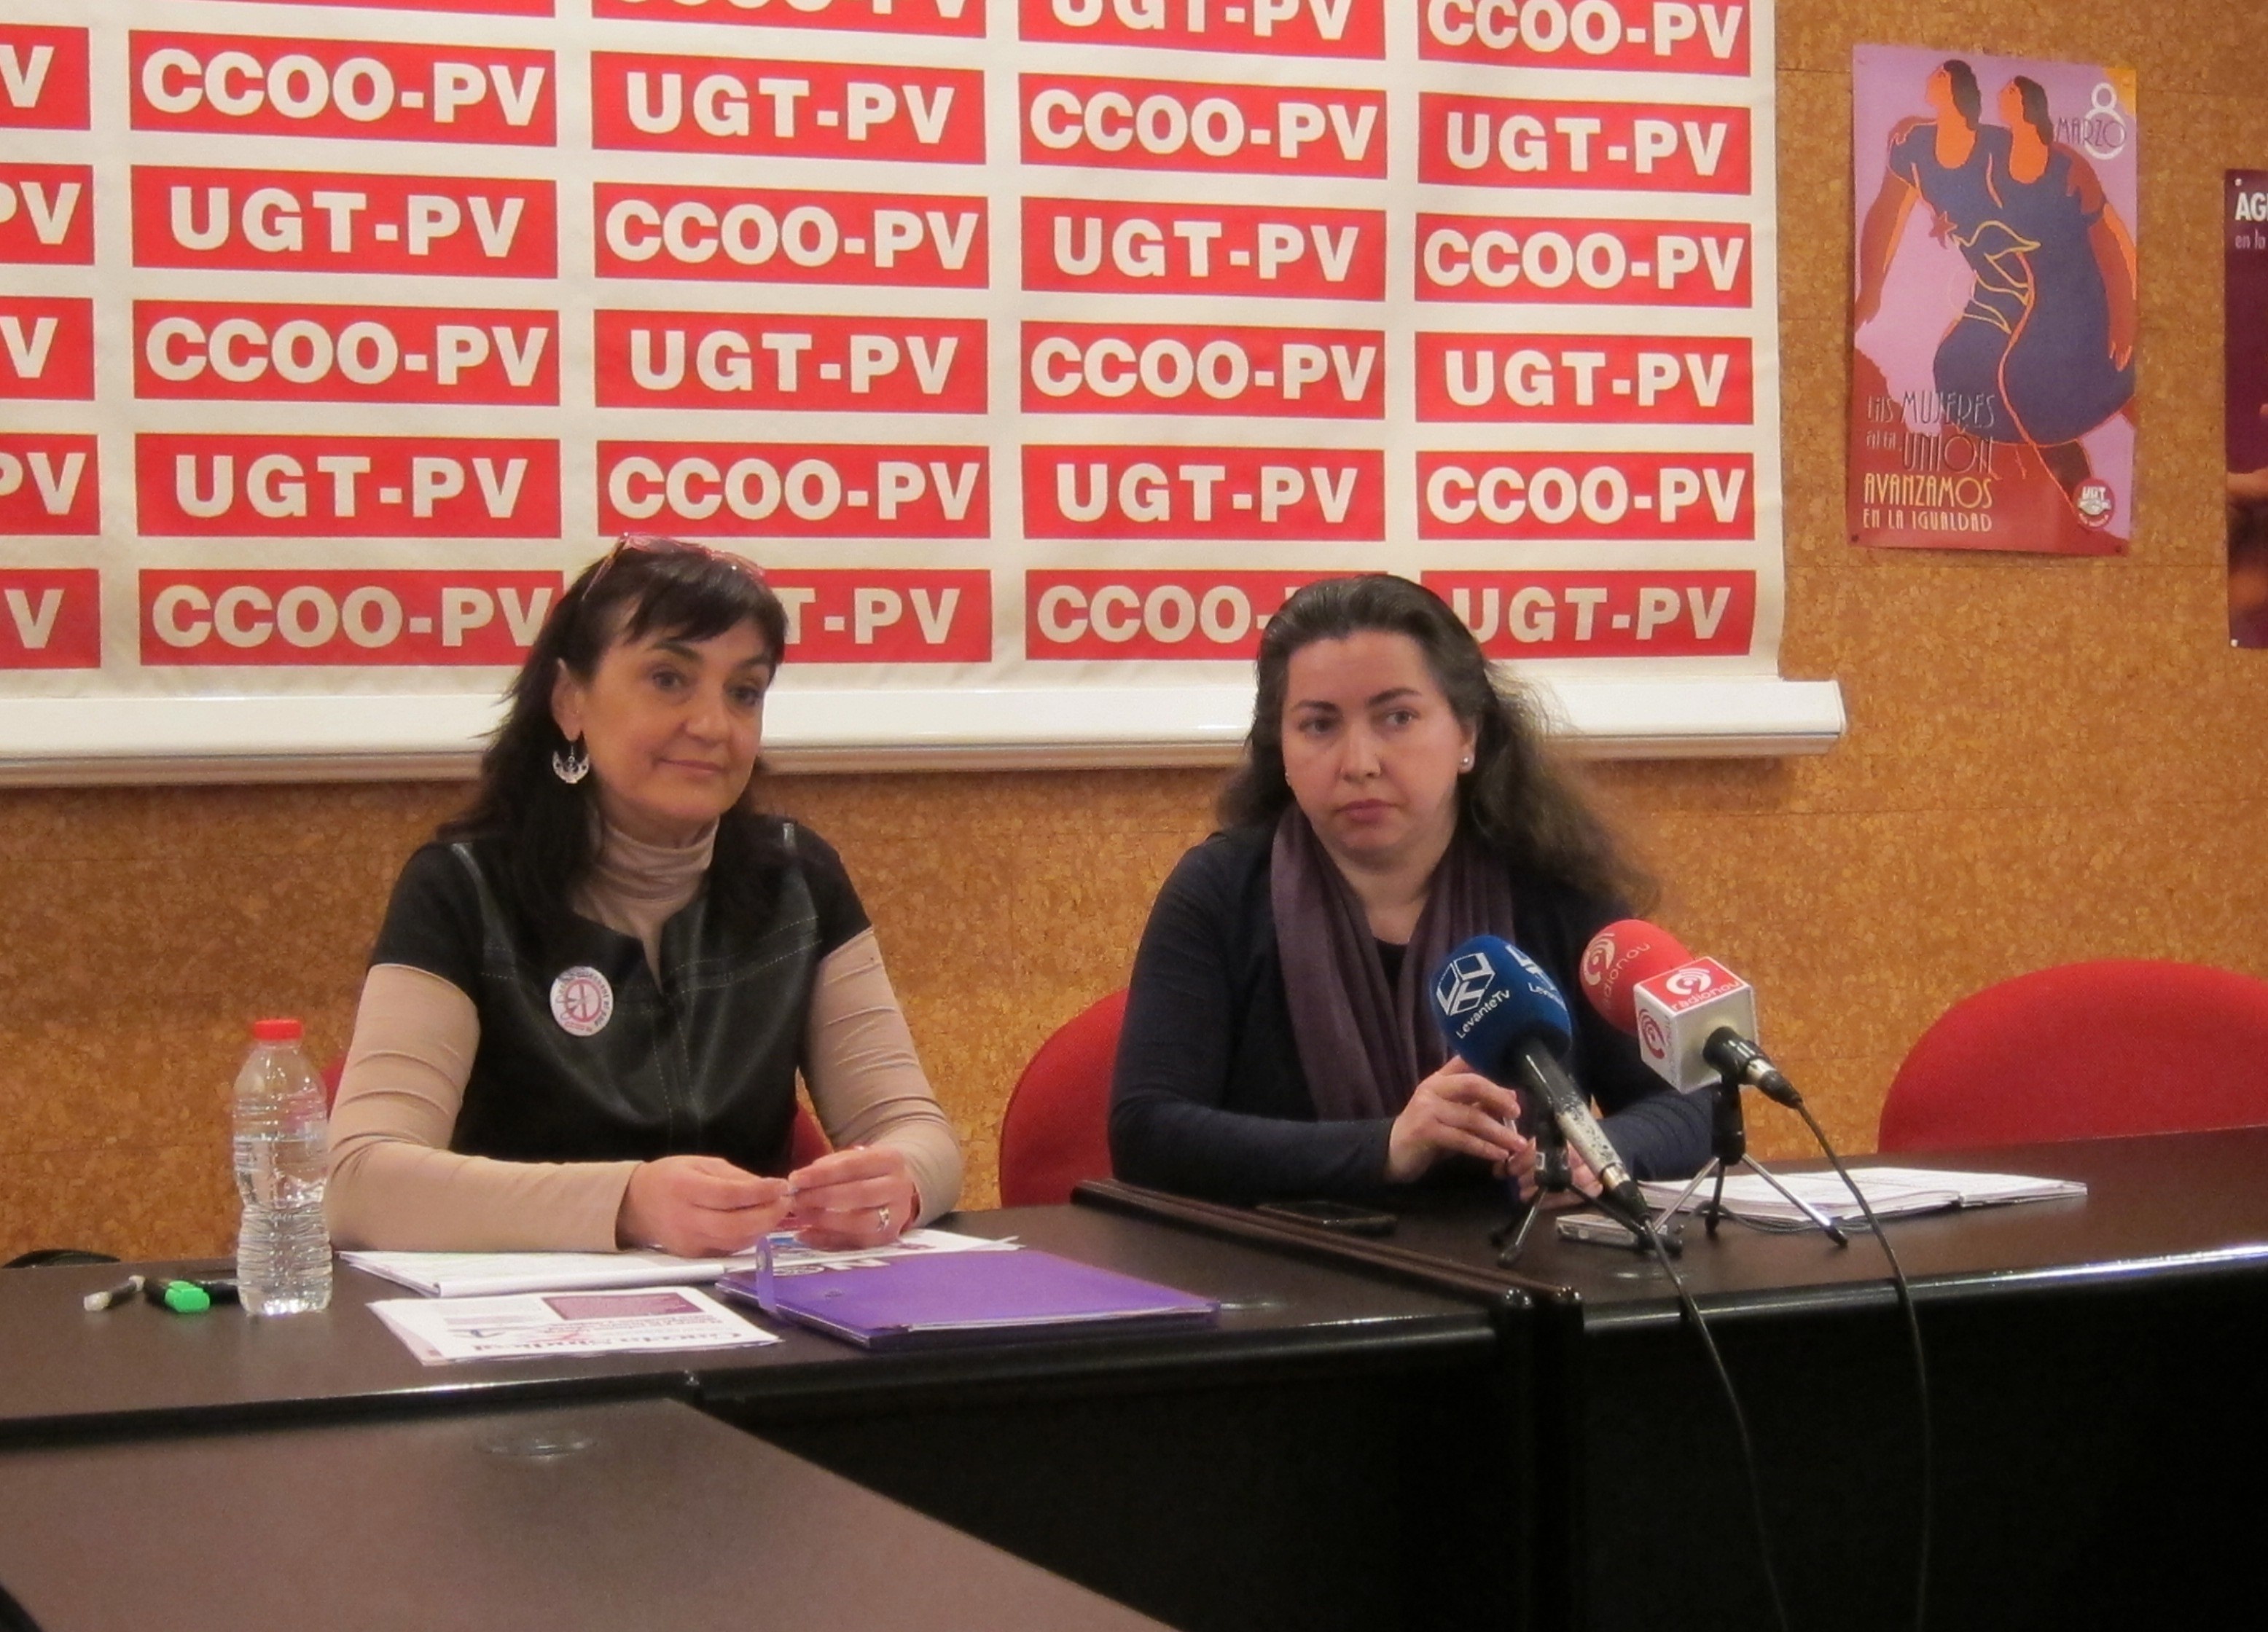 UGT-PV y CCOO-PV llaman a manifestarse el Día de la Mujer y denuncian que la reforma laboral «agrava las desigualdades»